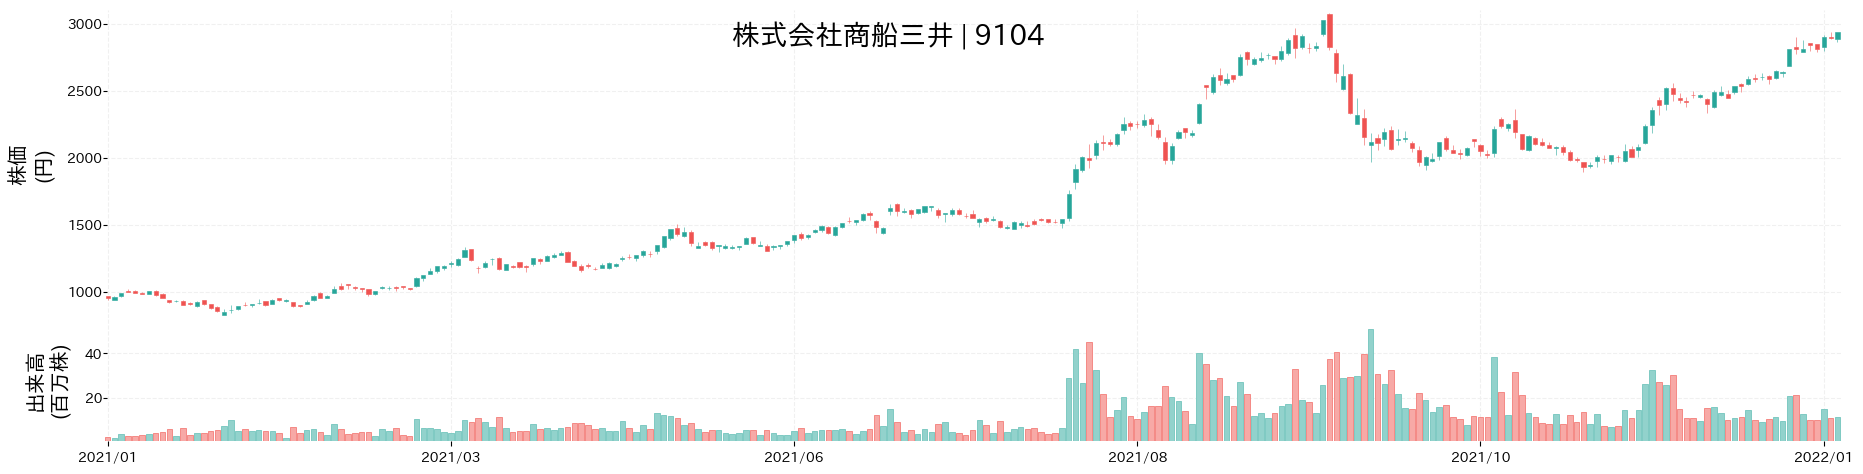 商船三井の株価推移(2021)